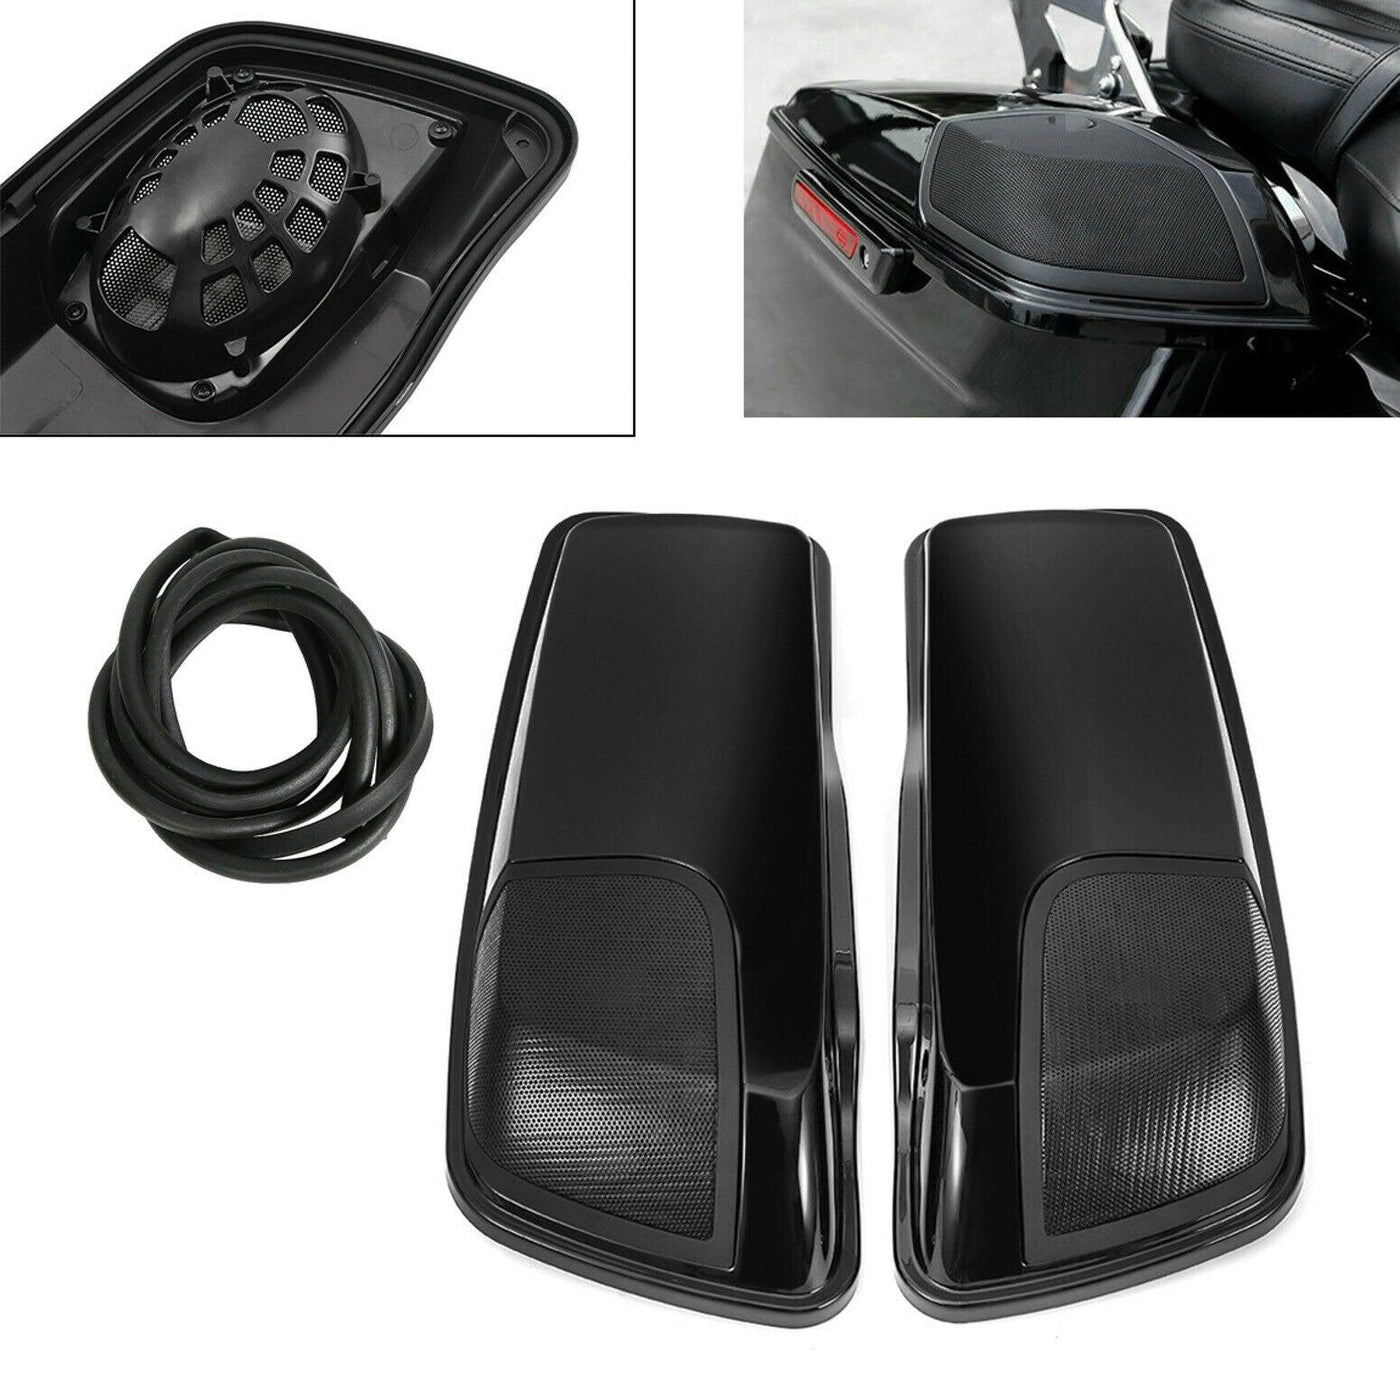 5" x 7" Black Saddlebag Speaker Lids Fit for Harley Electra Street Glide 2014-21 - Moto Life Products